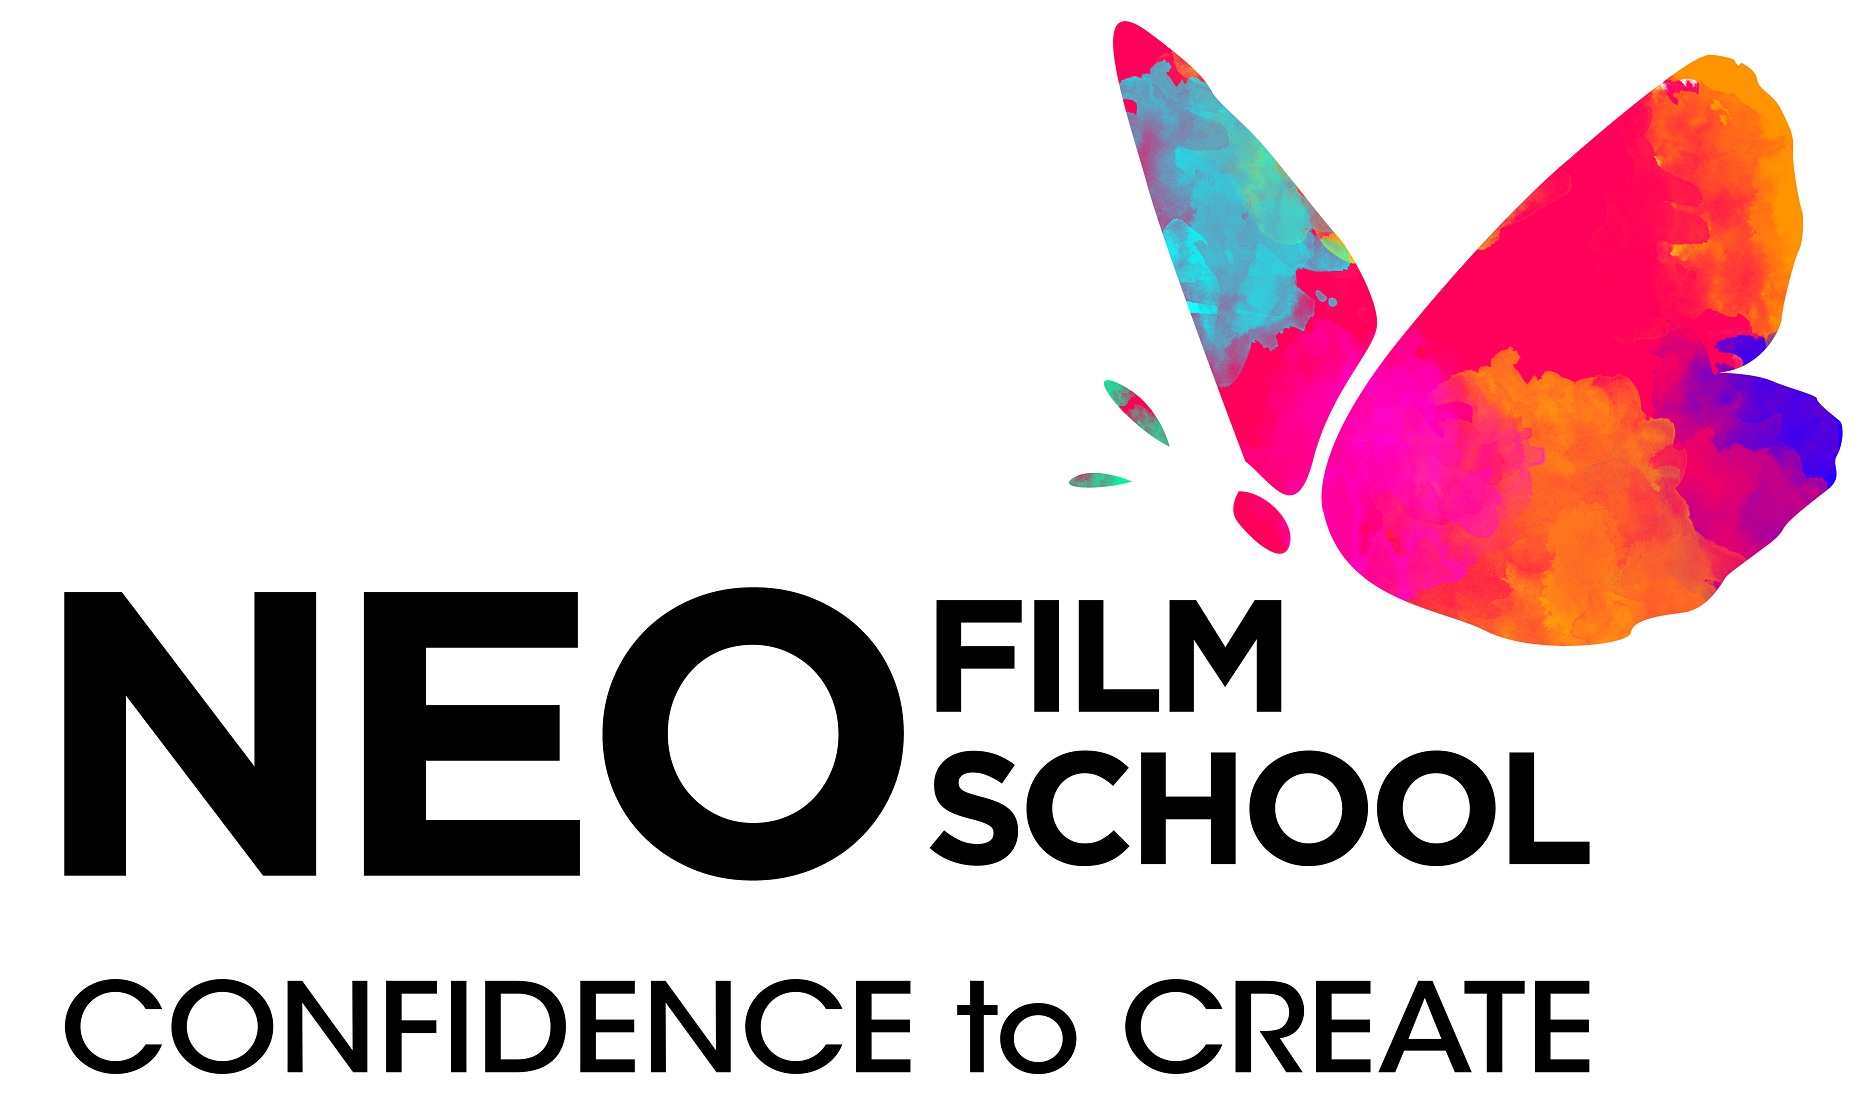 Neo film school in Kerala 